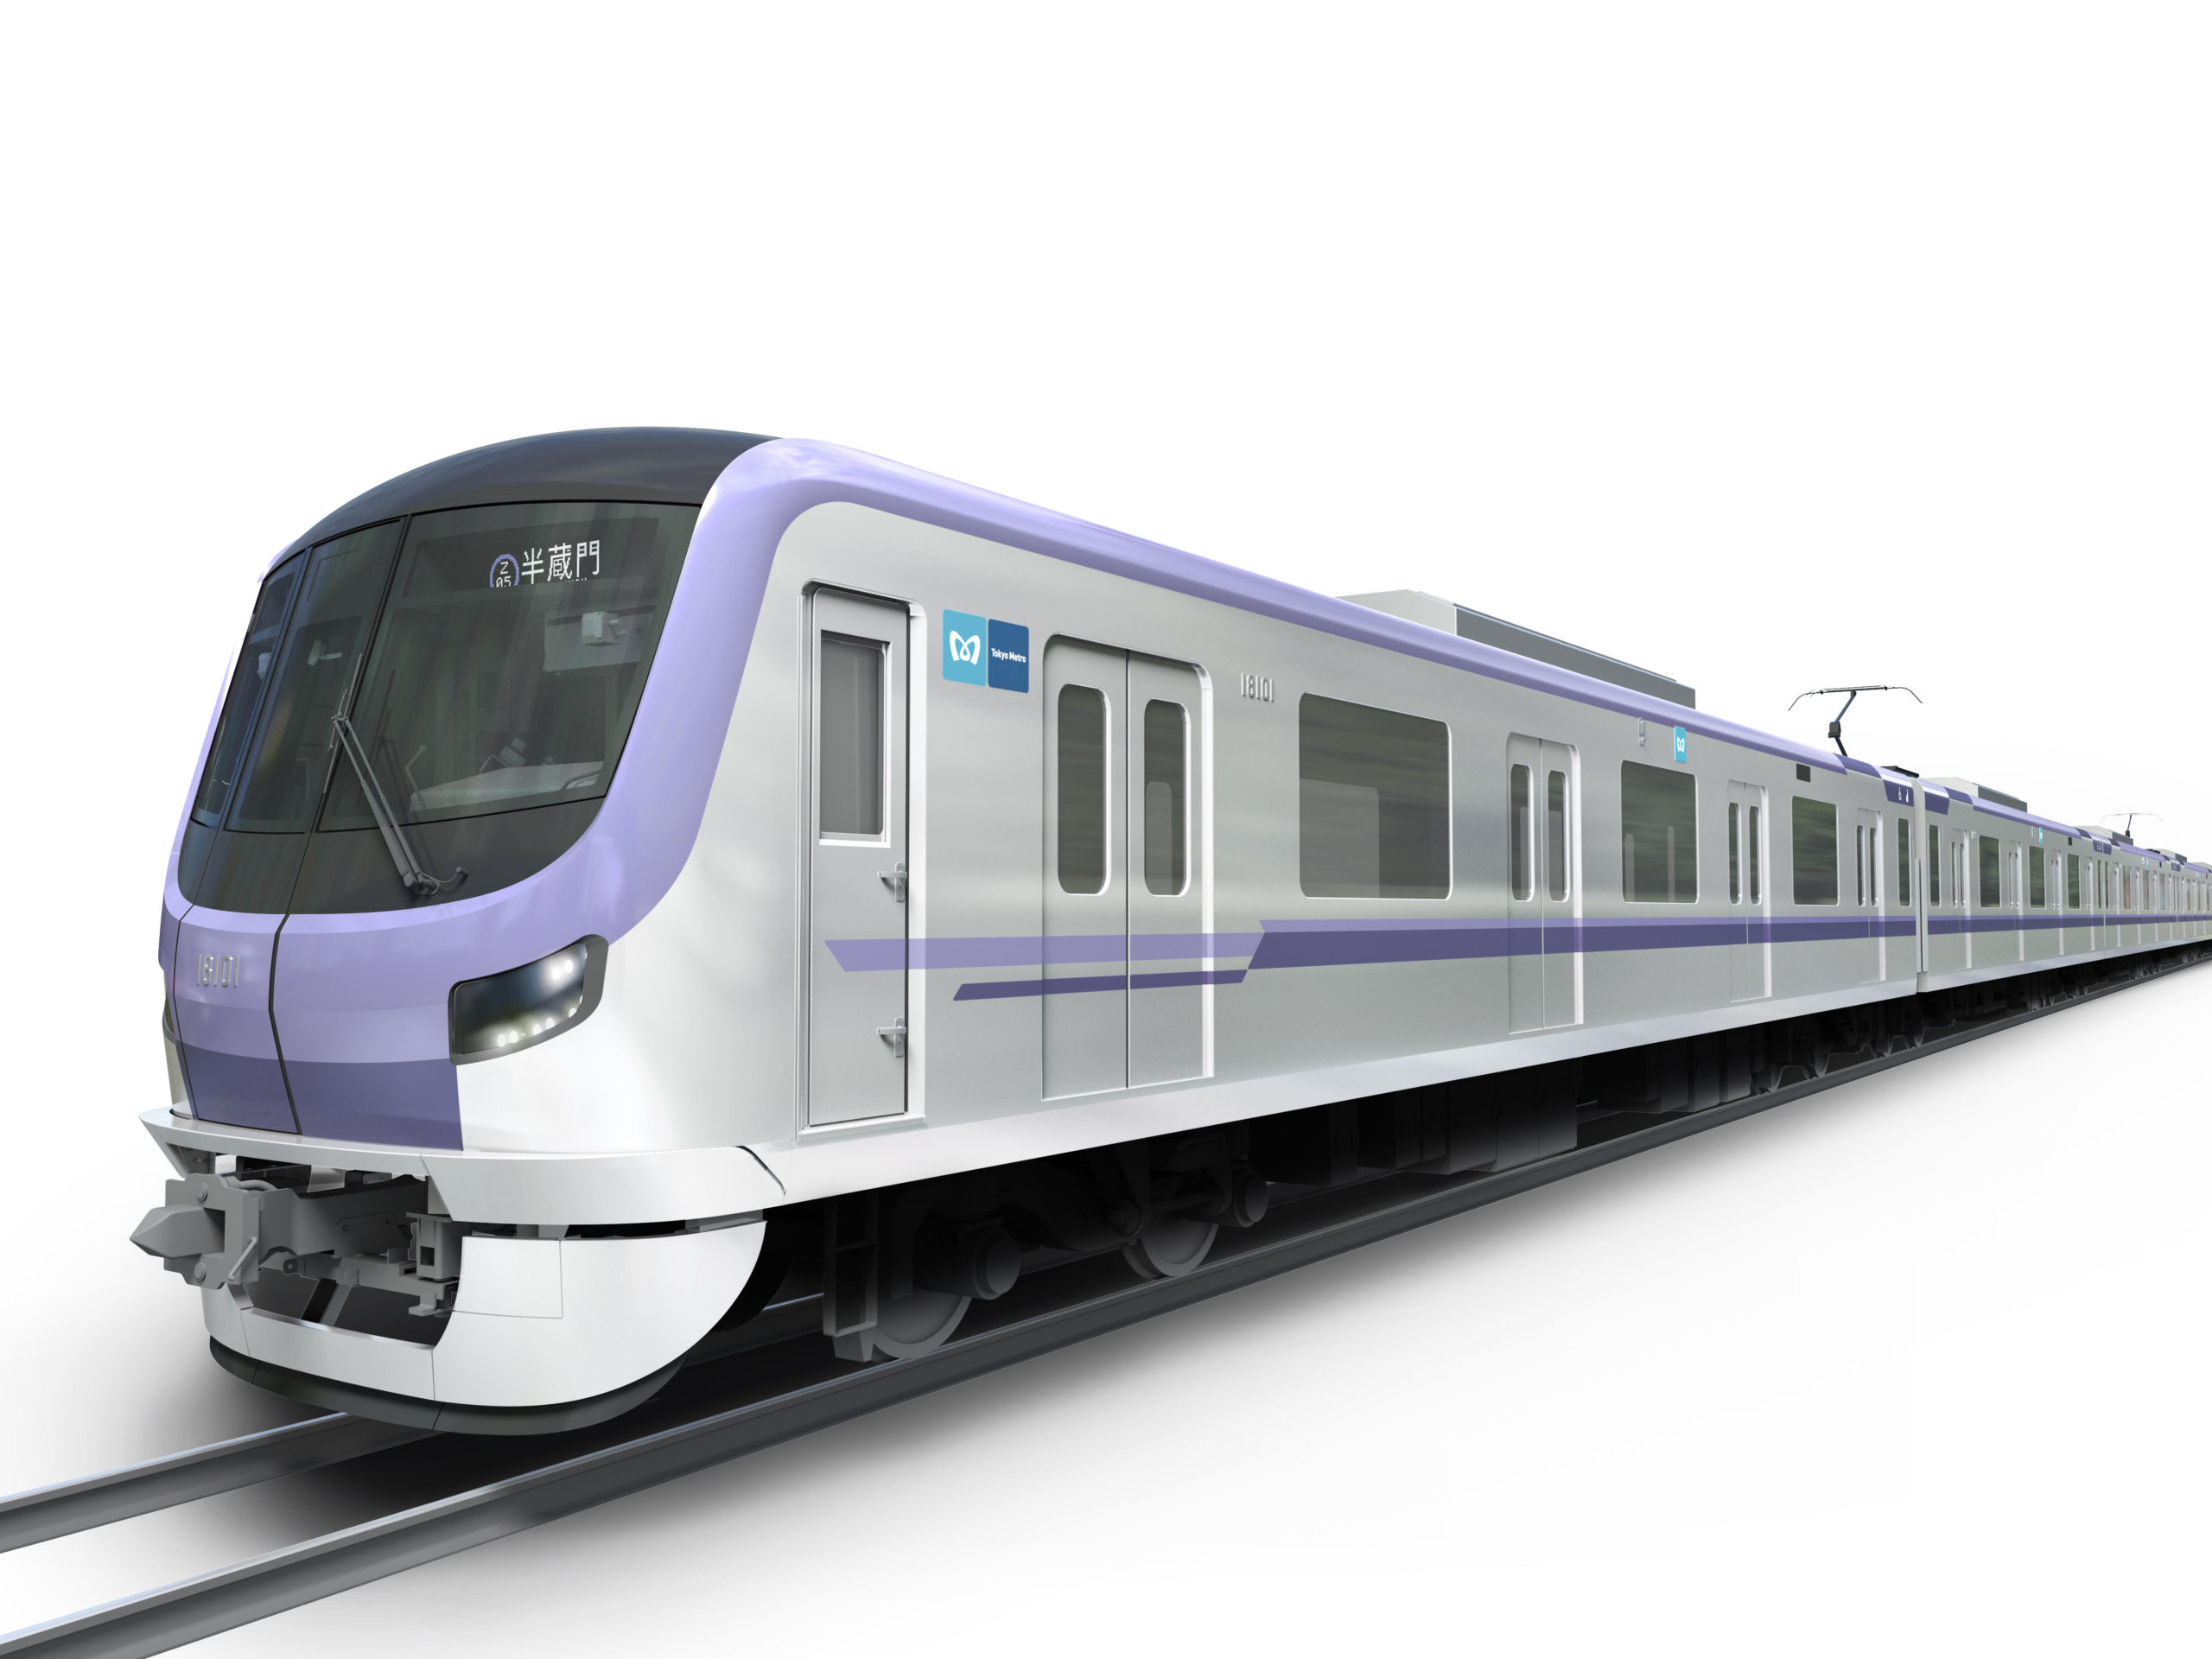 東京メトロ 新型系 21年上半期にデビュー 8000系を置き換えへ 鉄道プレス